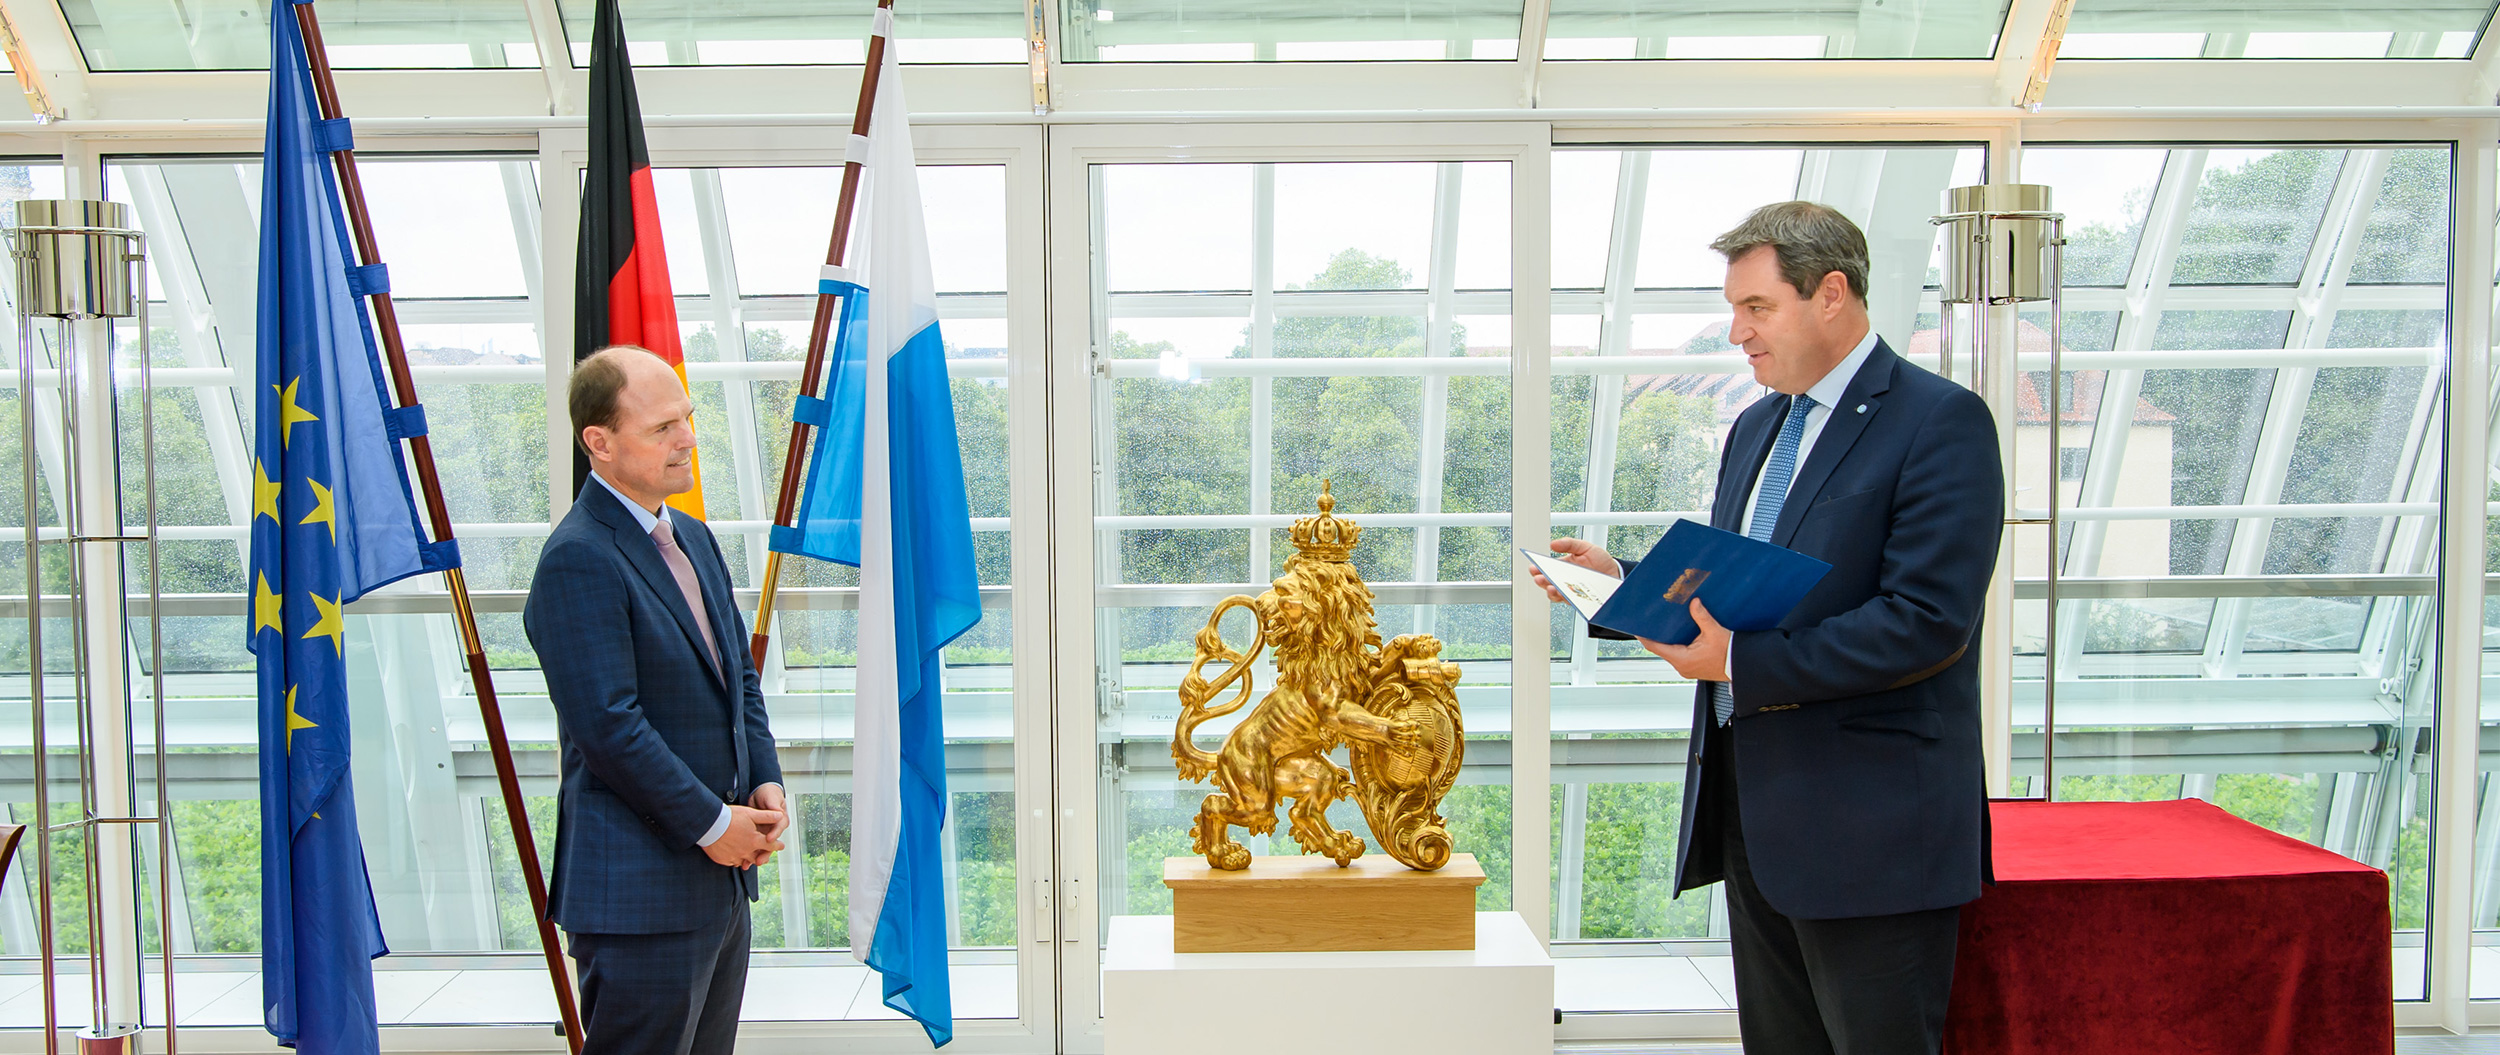 Das Bild zeigt die Ernennung des Bürgerbeauftragten durch Ministerpräsident Dr. Markus Söder